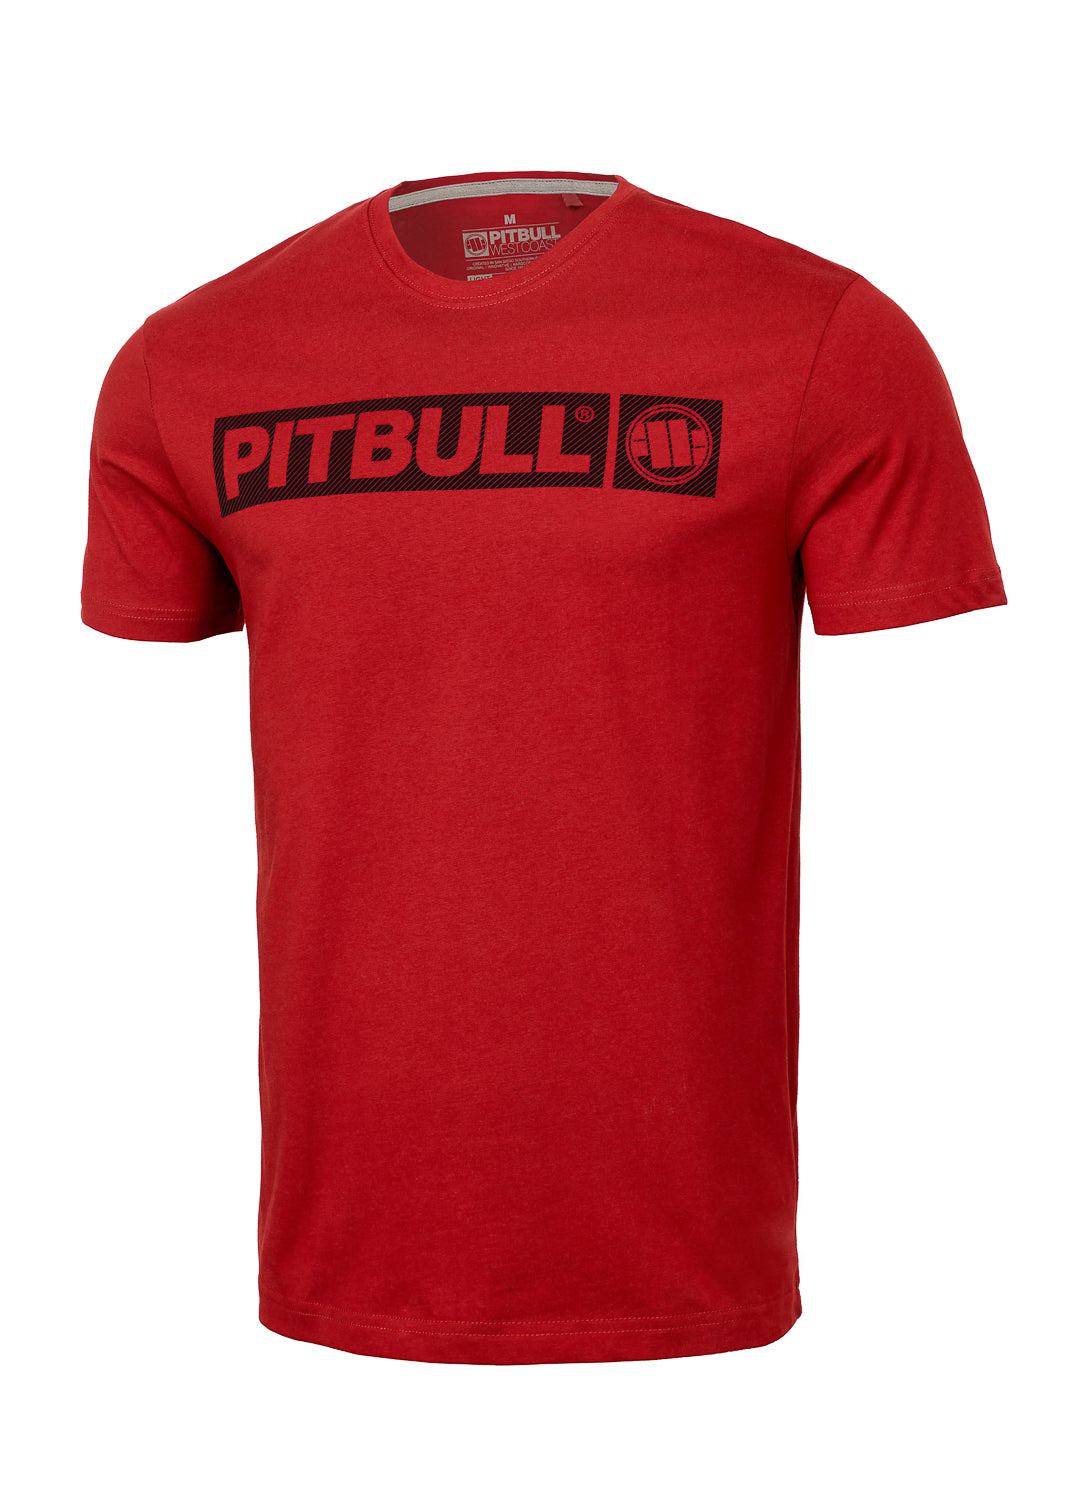 HILLTOP Lightweight Red T-shirt.